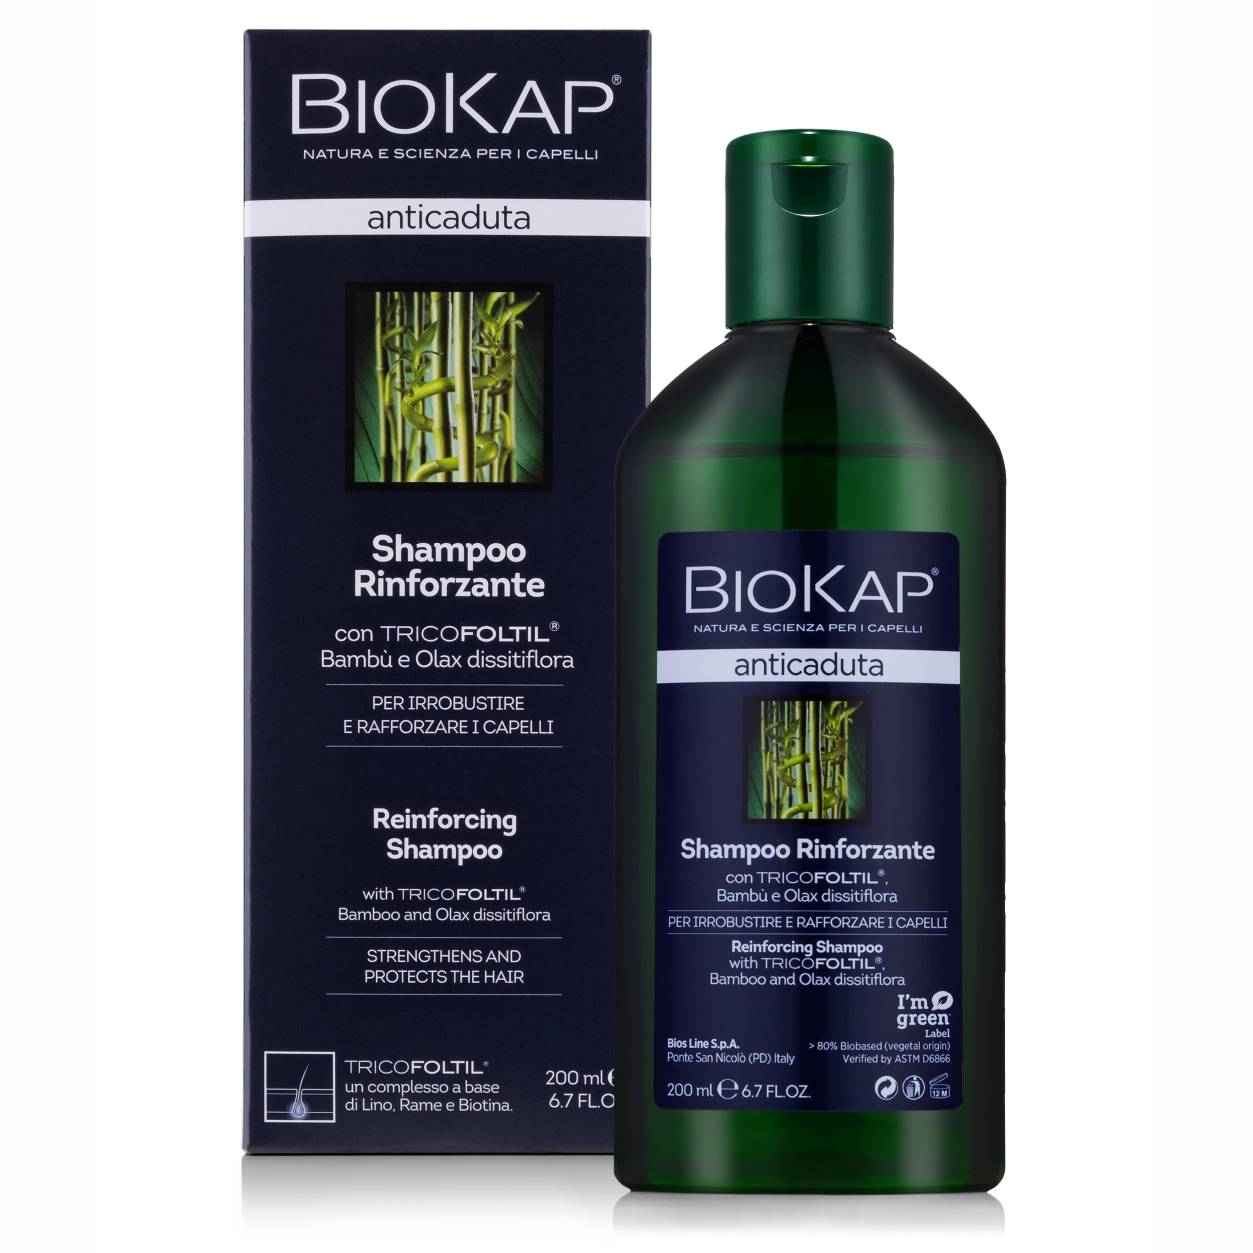 biokap szampon organiczny opinie